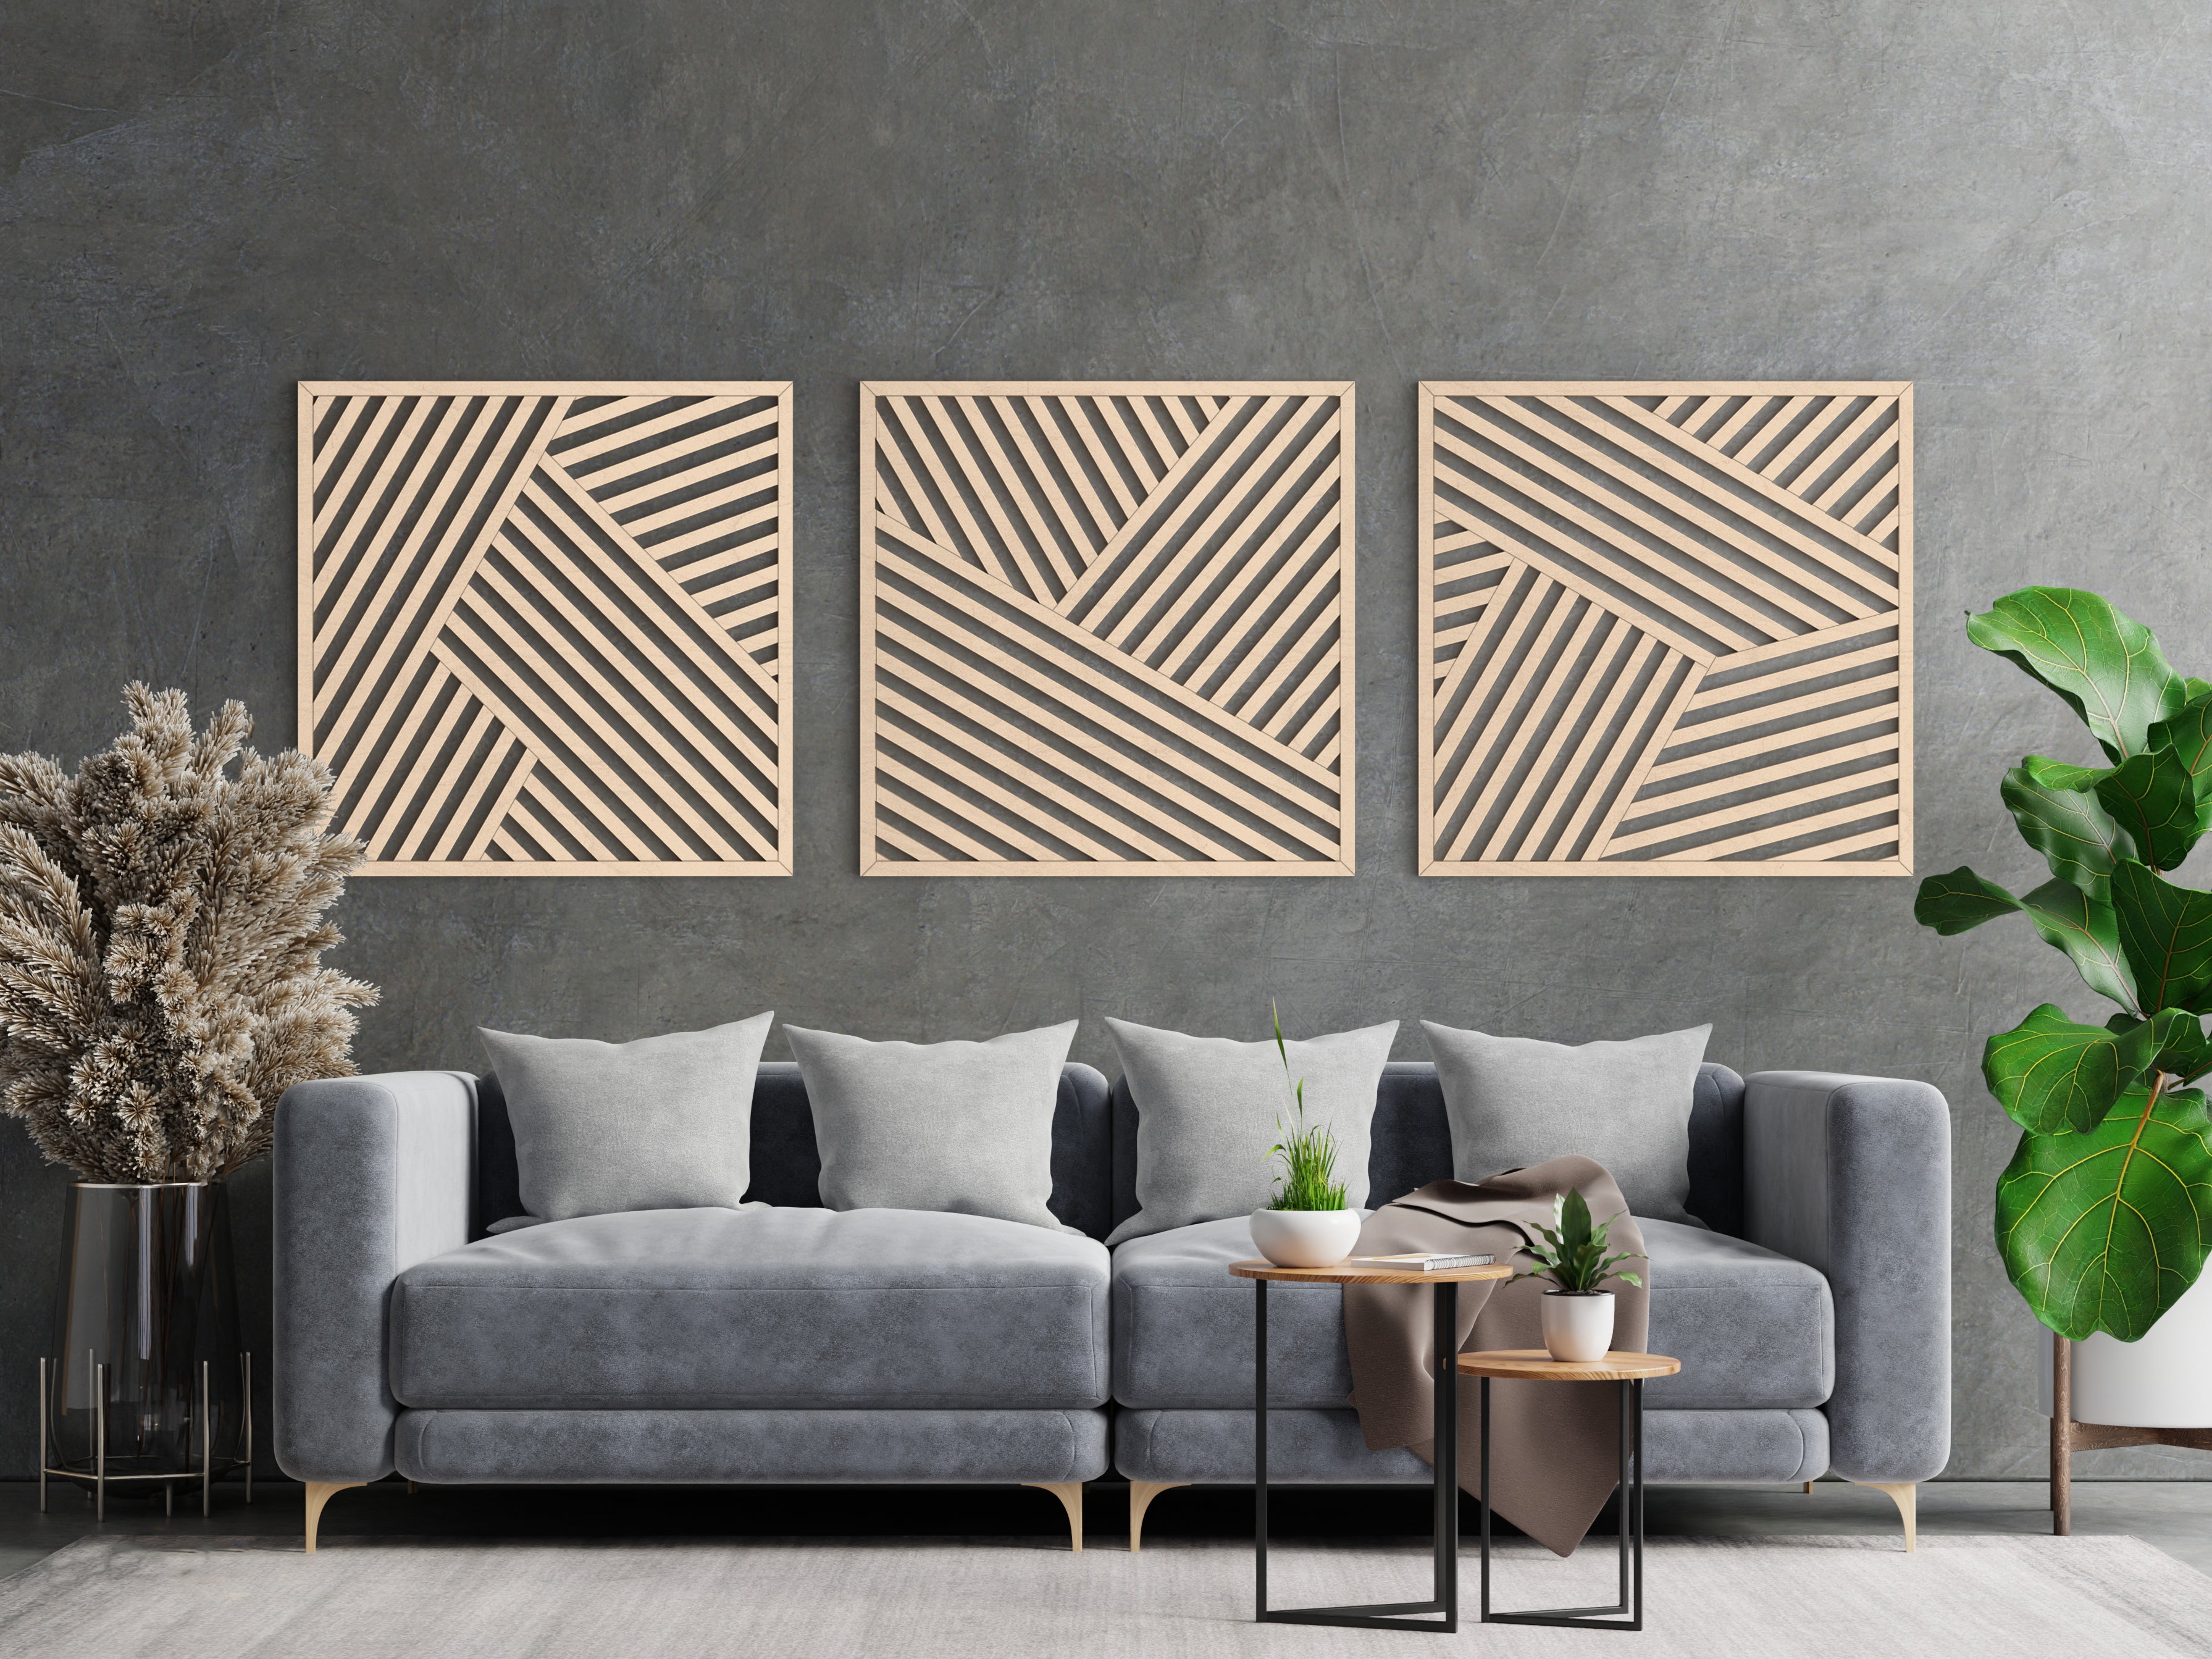 Wood wall art - Geometric wood wall decor - Minimalist wall art